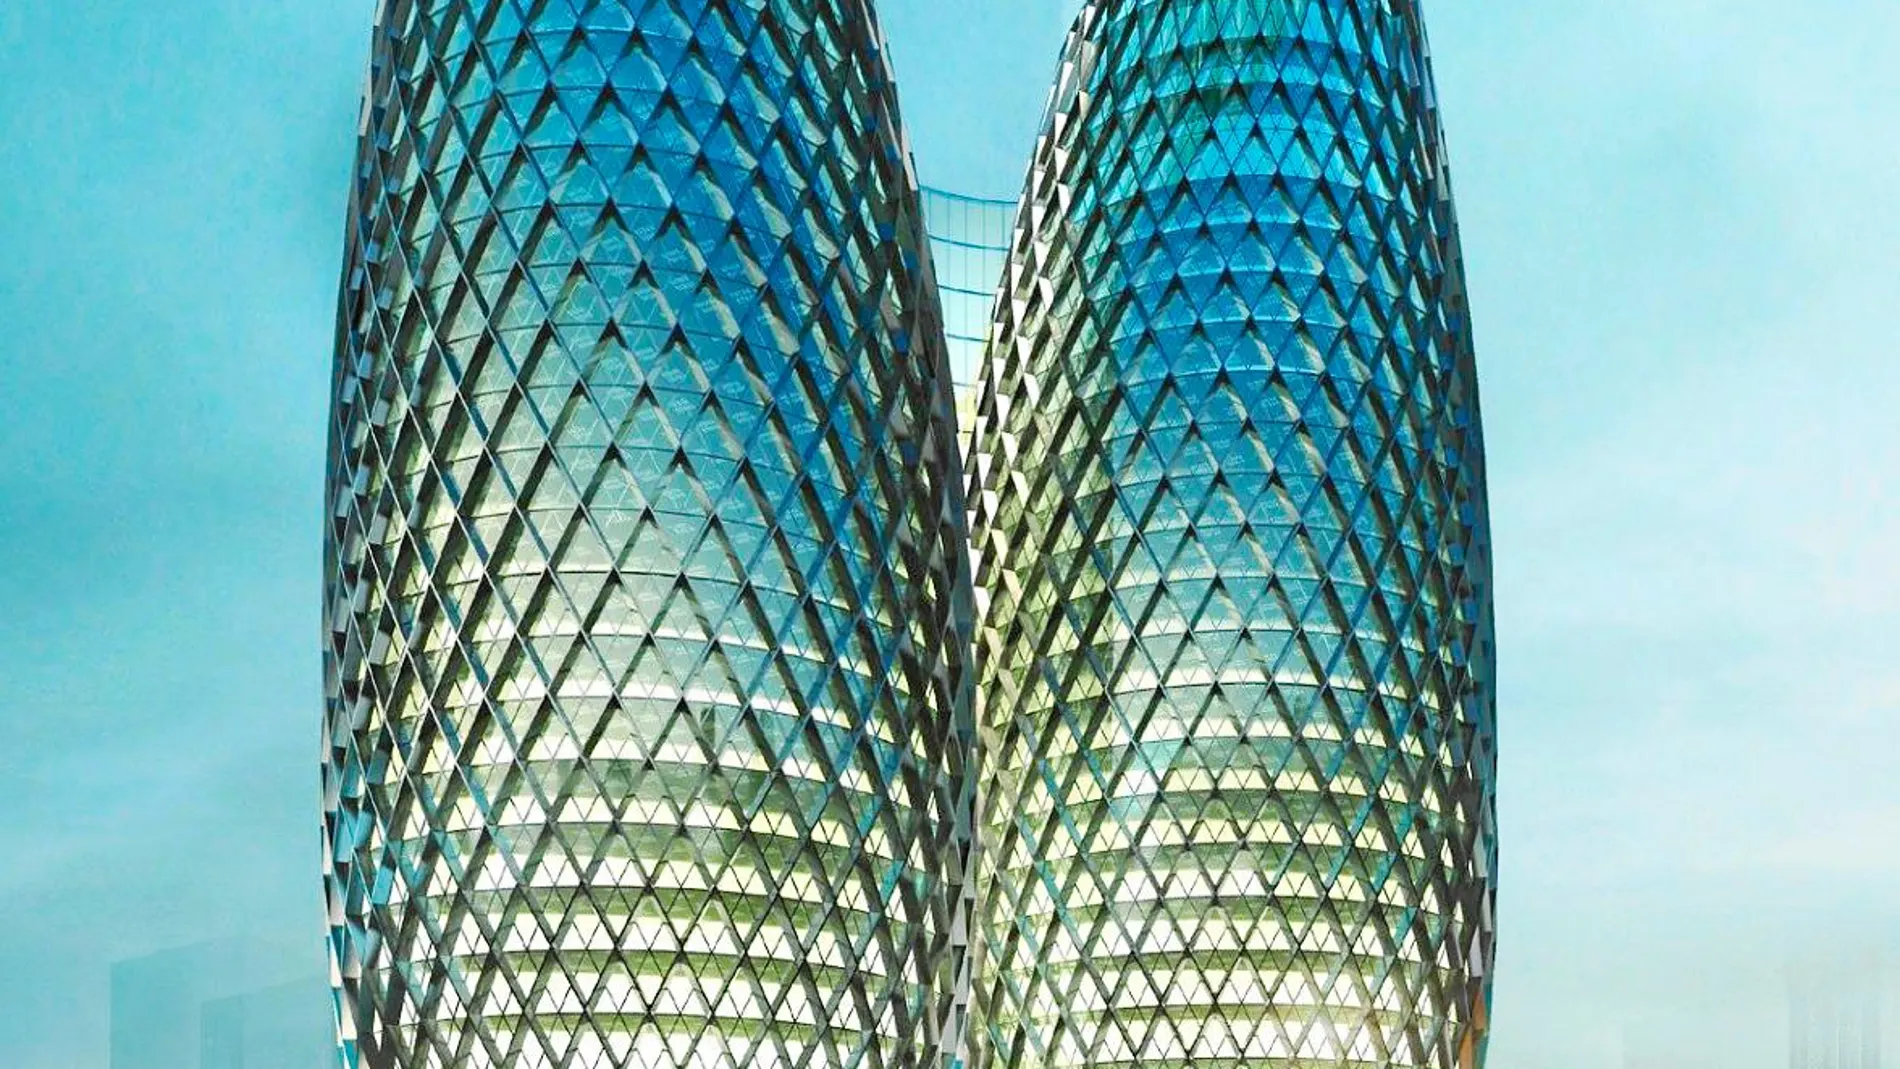 Tai Da Towers, en el complejo financiero de Chengdú (China). Para crearlas se han inspirado en los cactus